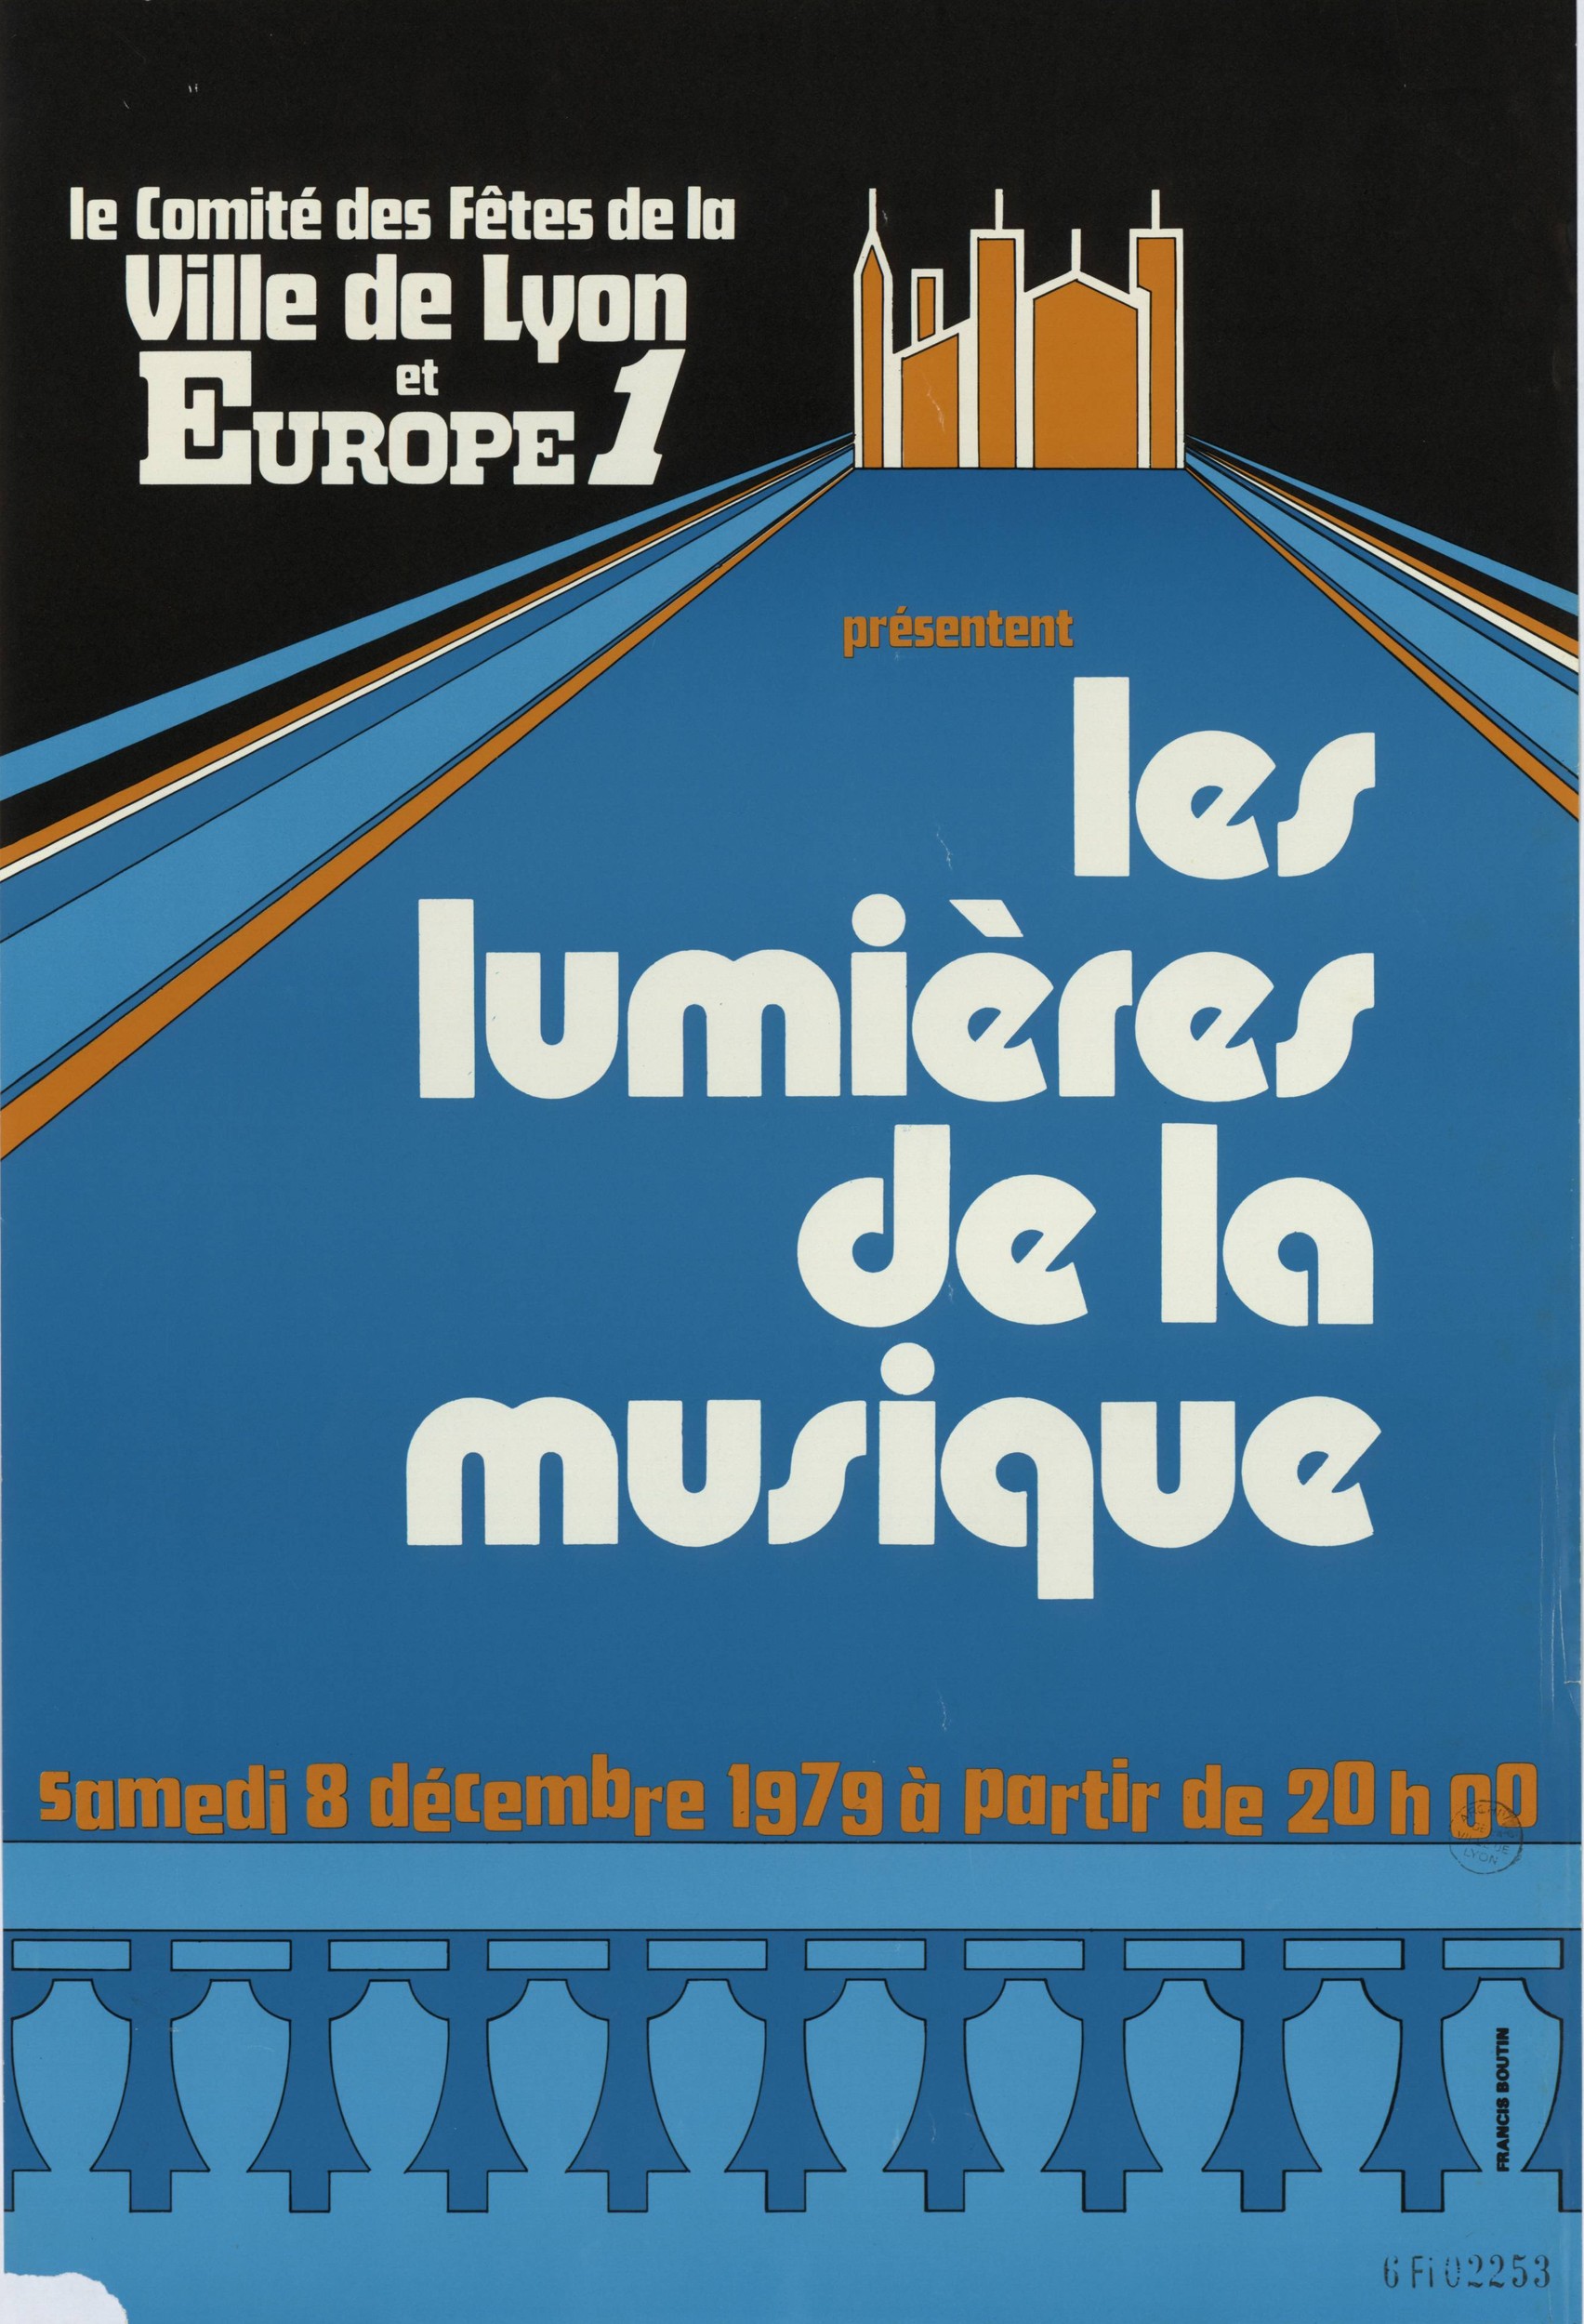 Les lumières de la musique : affiche illustrée, crédit Francis Boutin (8/12/1979, cote : 6FI/2253, repro. à usage privé)